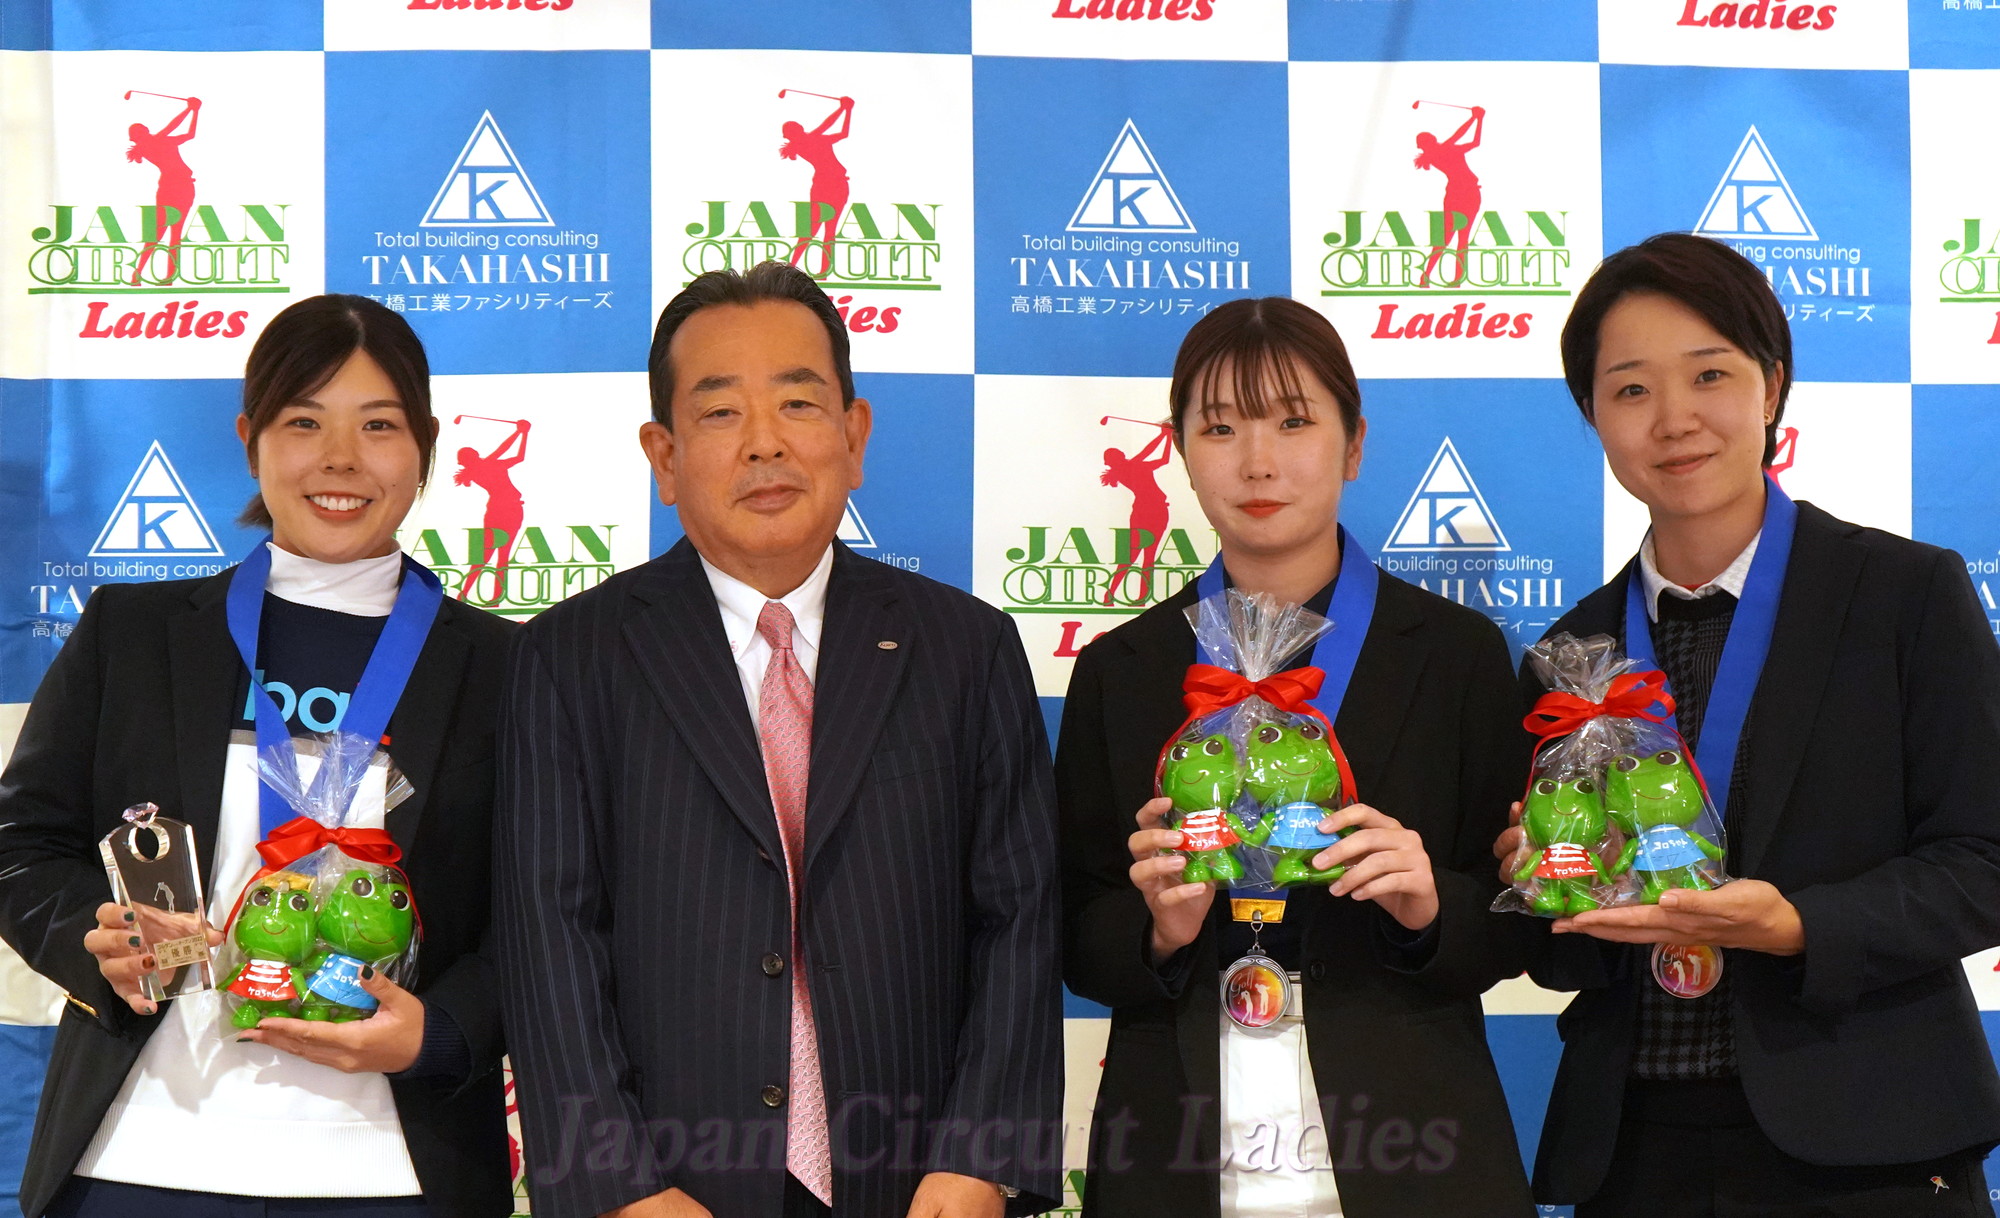 Japan Circuit Ladies Organization